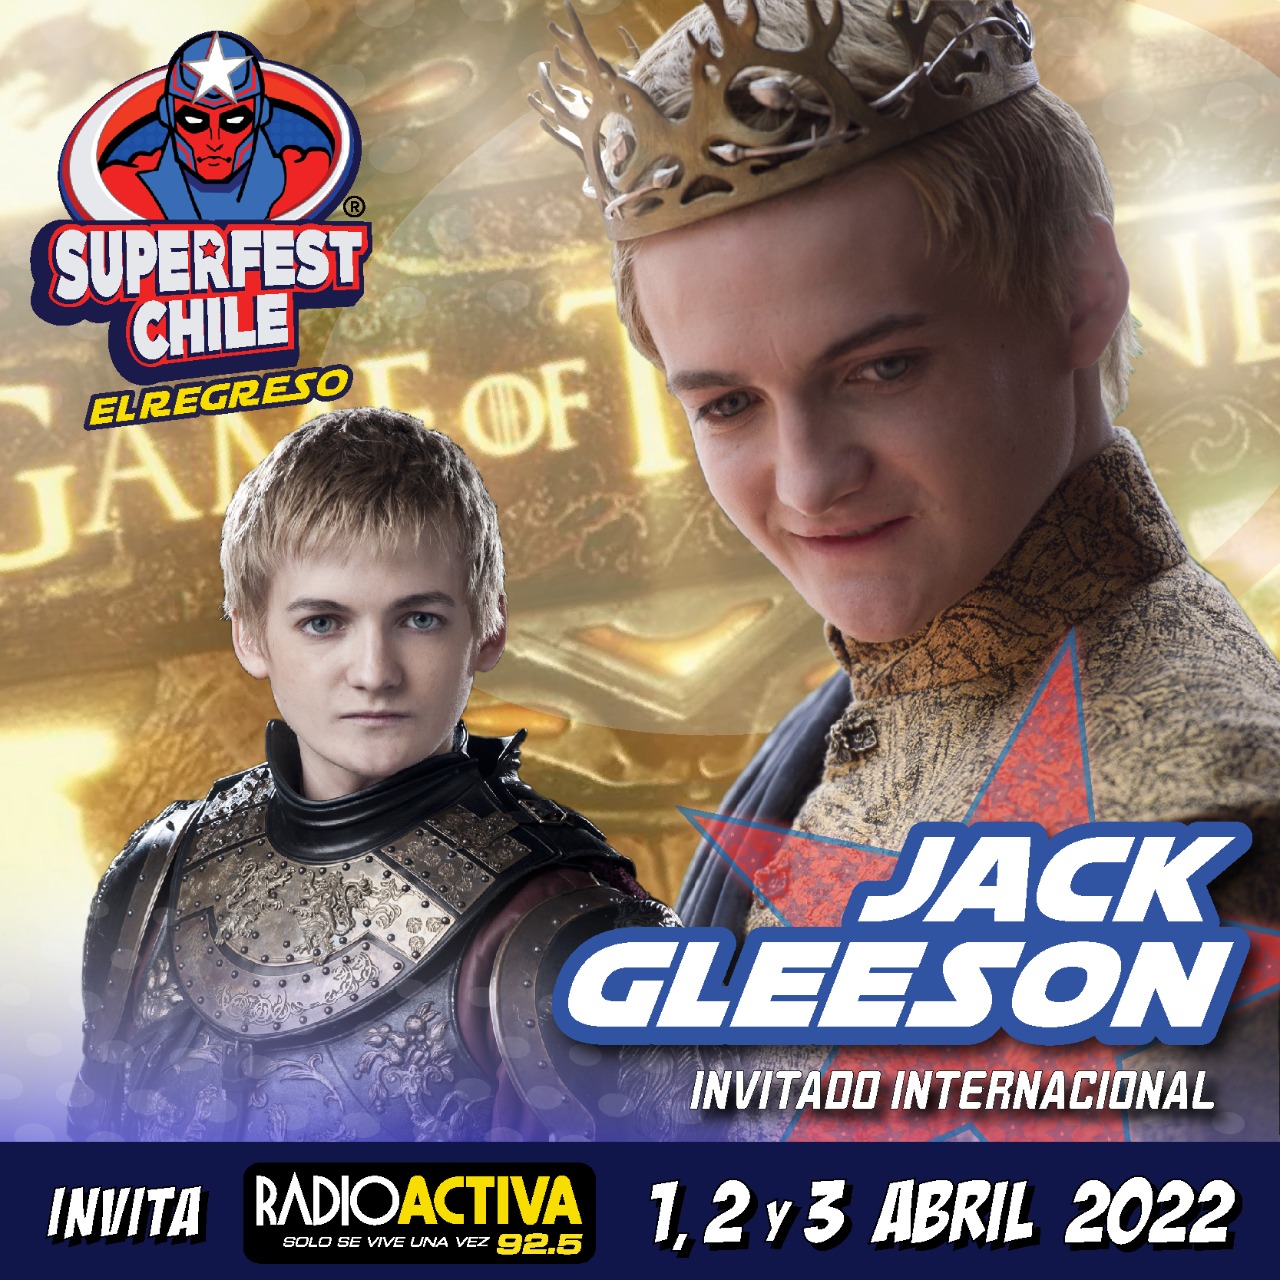 Jack Gleeson Superfest